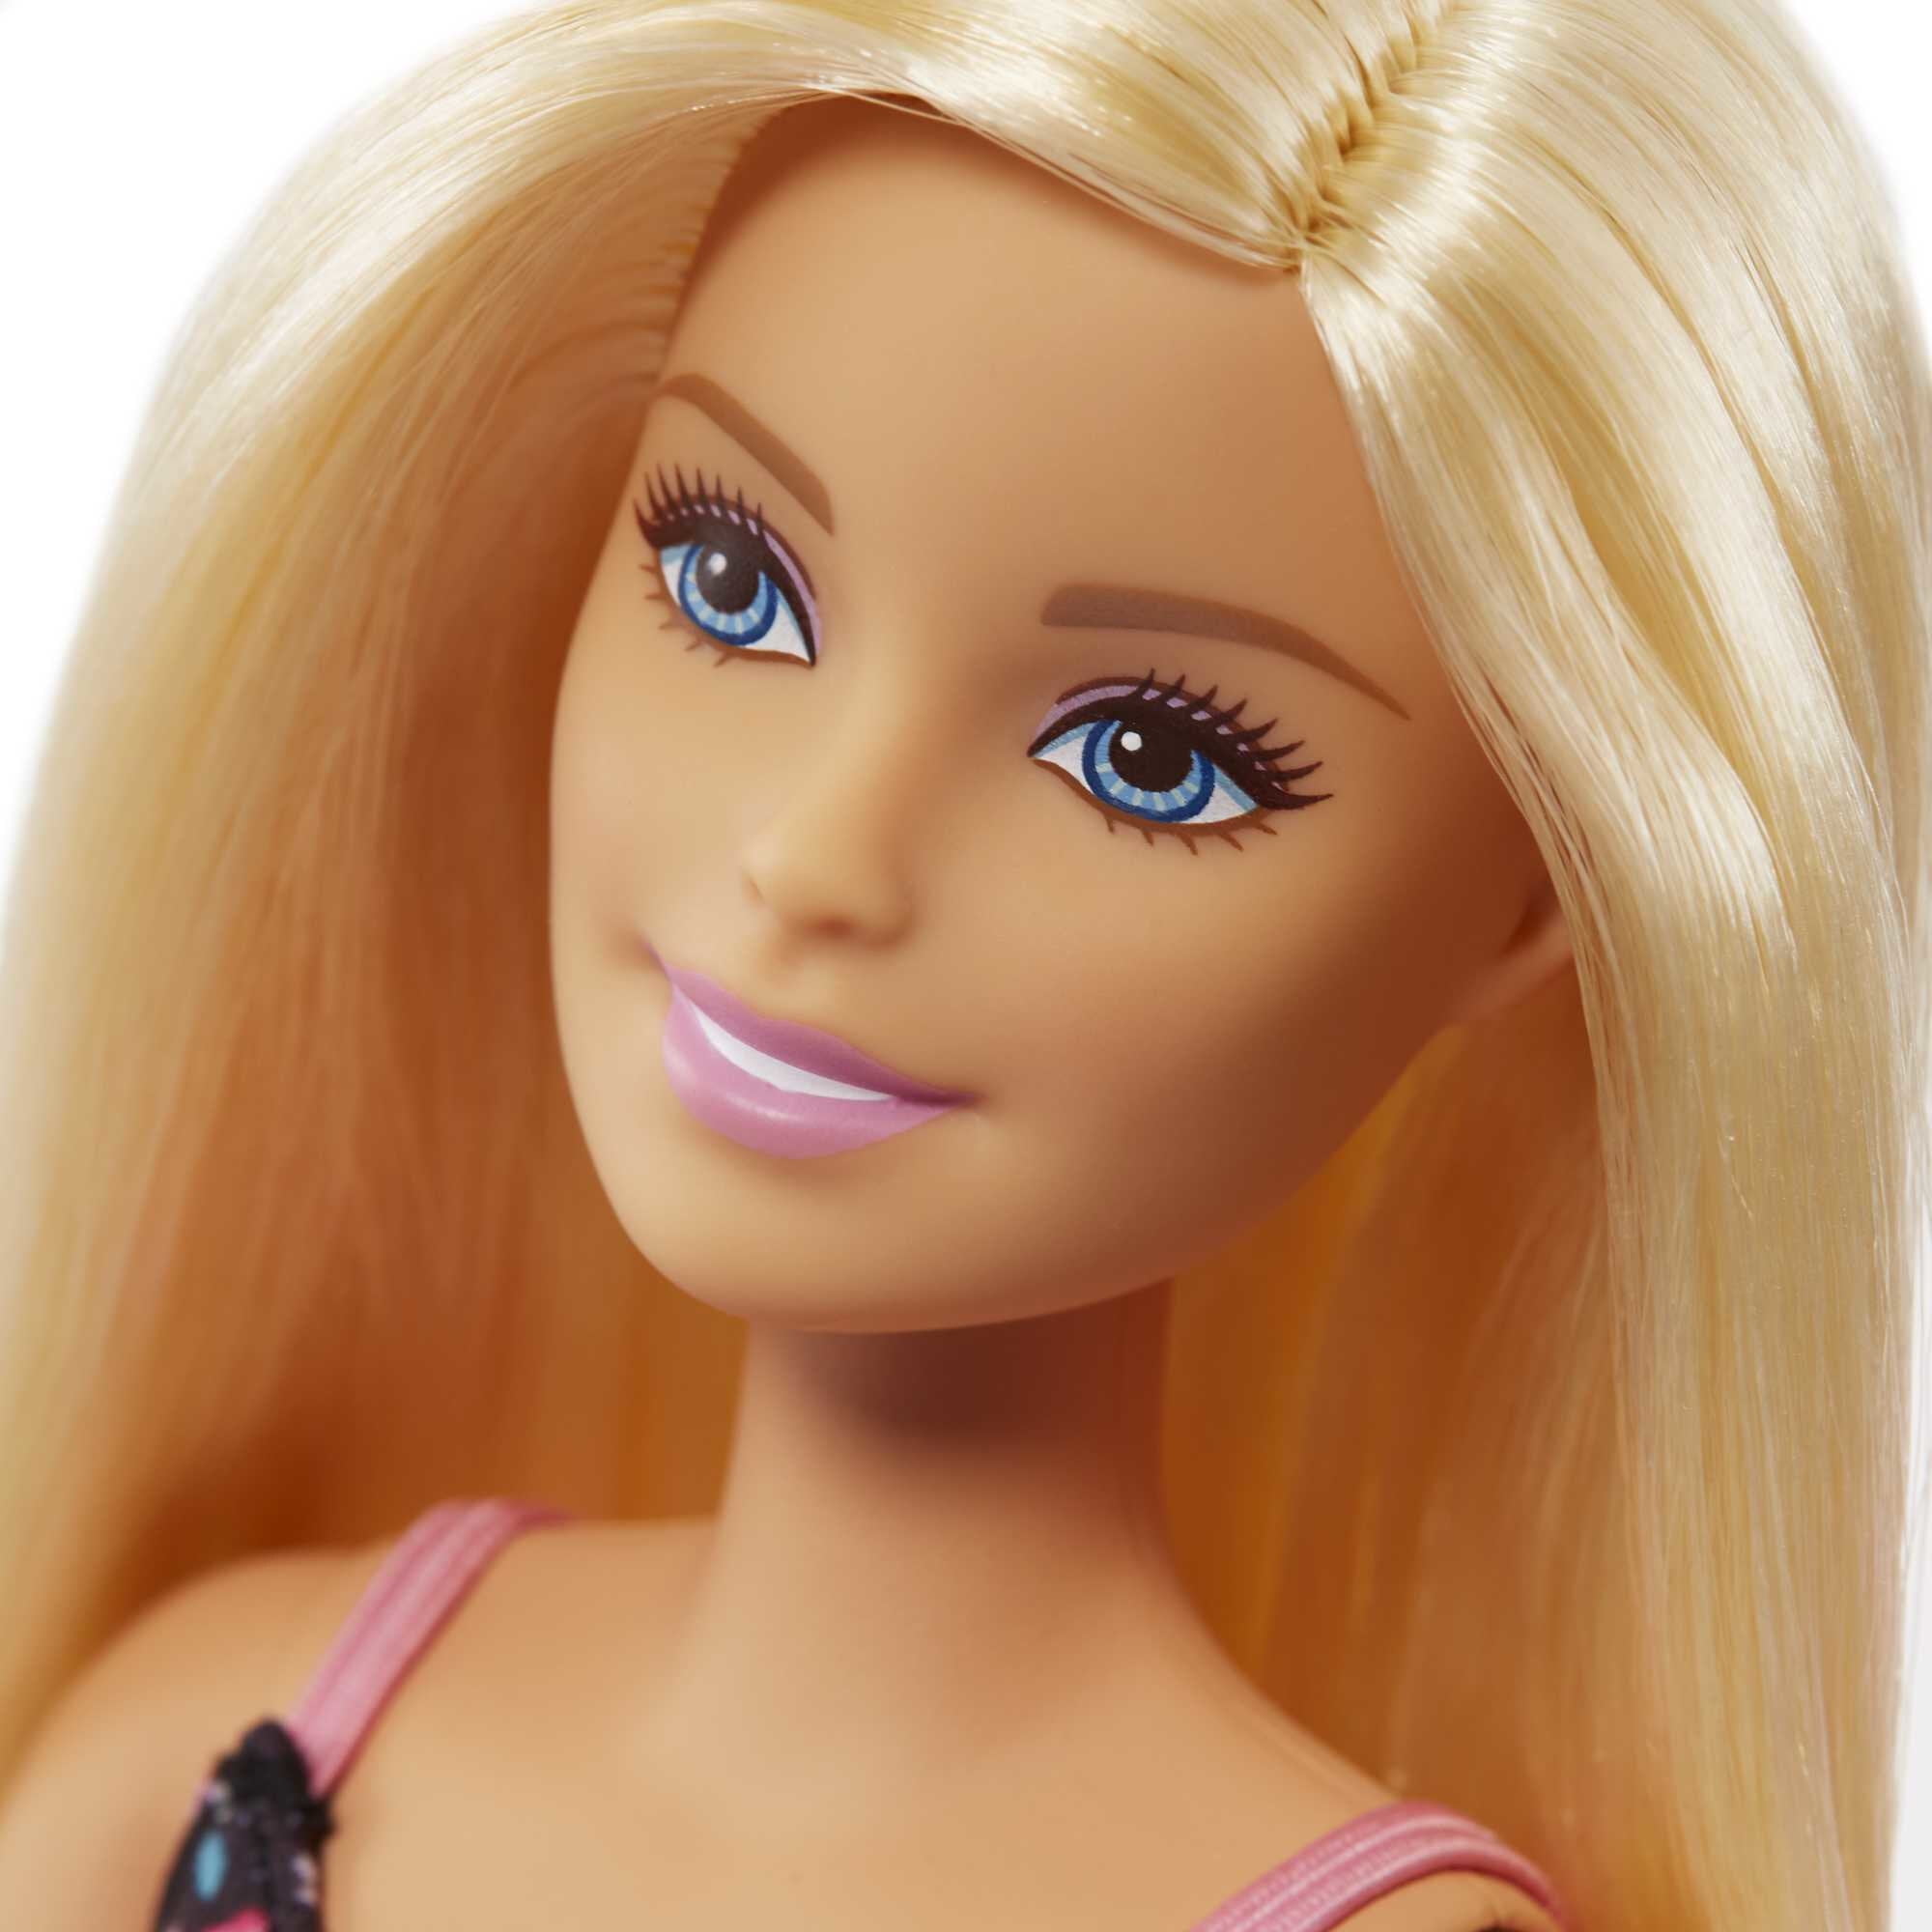 Кукла барби дай. Набор Barbie frp01 супермаркет. Барби Маттел. Кукла Маттель Барби. Mattel Barbie frp01 Барби супермаркет в ассортименте.